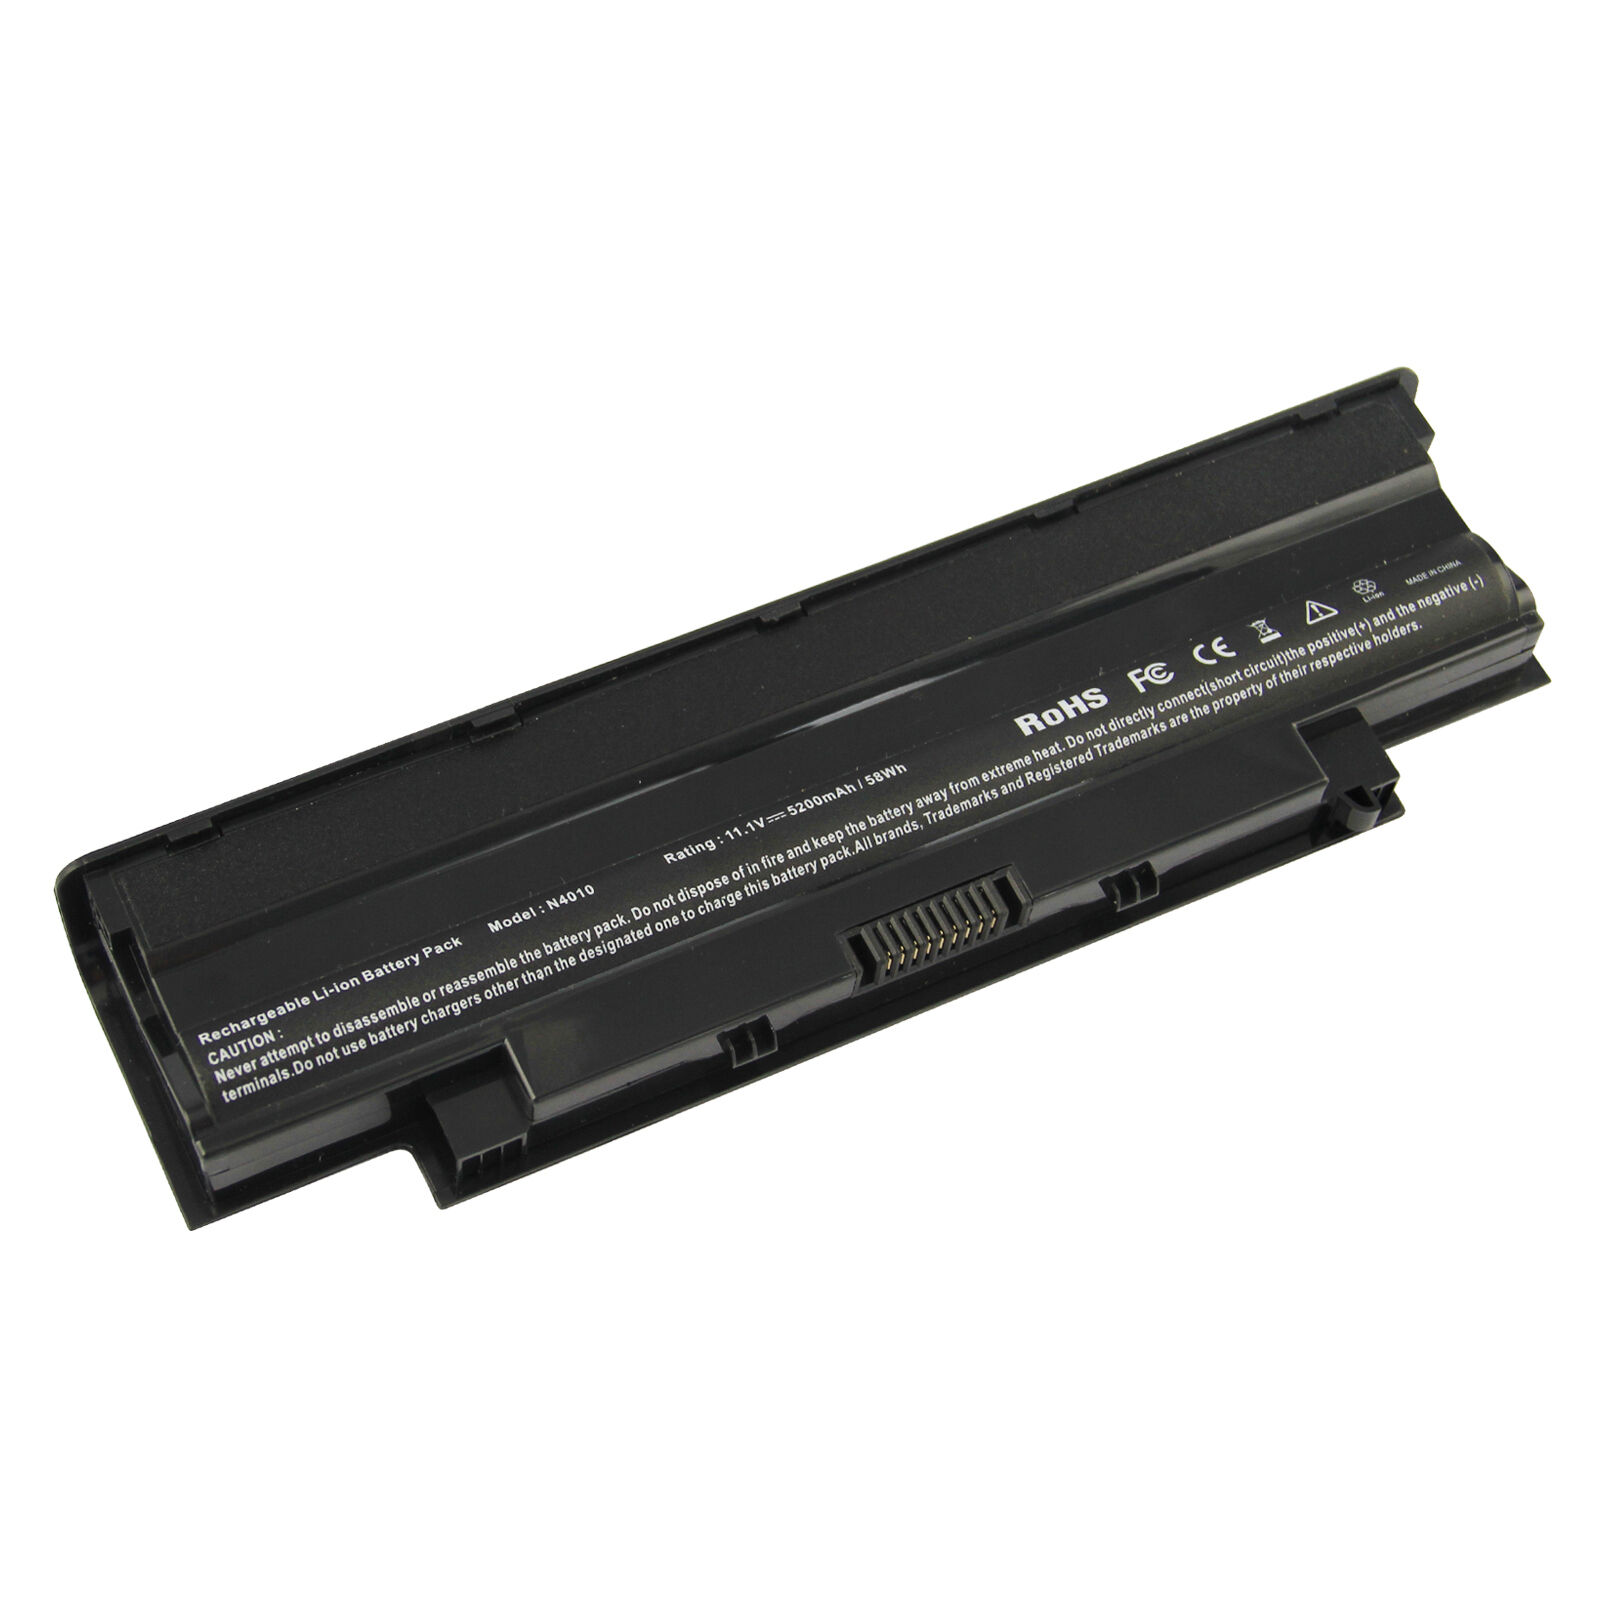 Battery J1KND for Dell Inspiron N5010 N4010 M5030 N5110 N7010 N7110 N3010